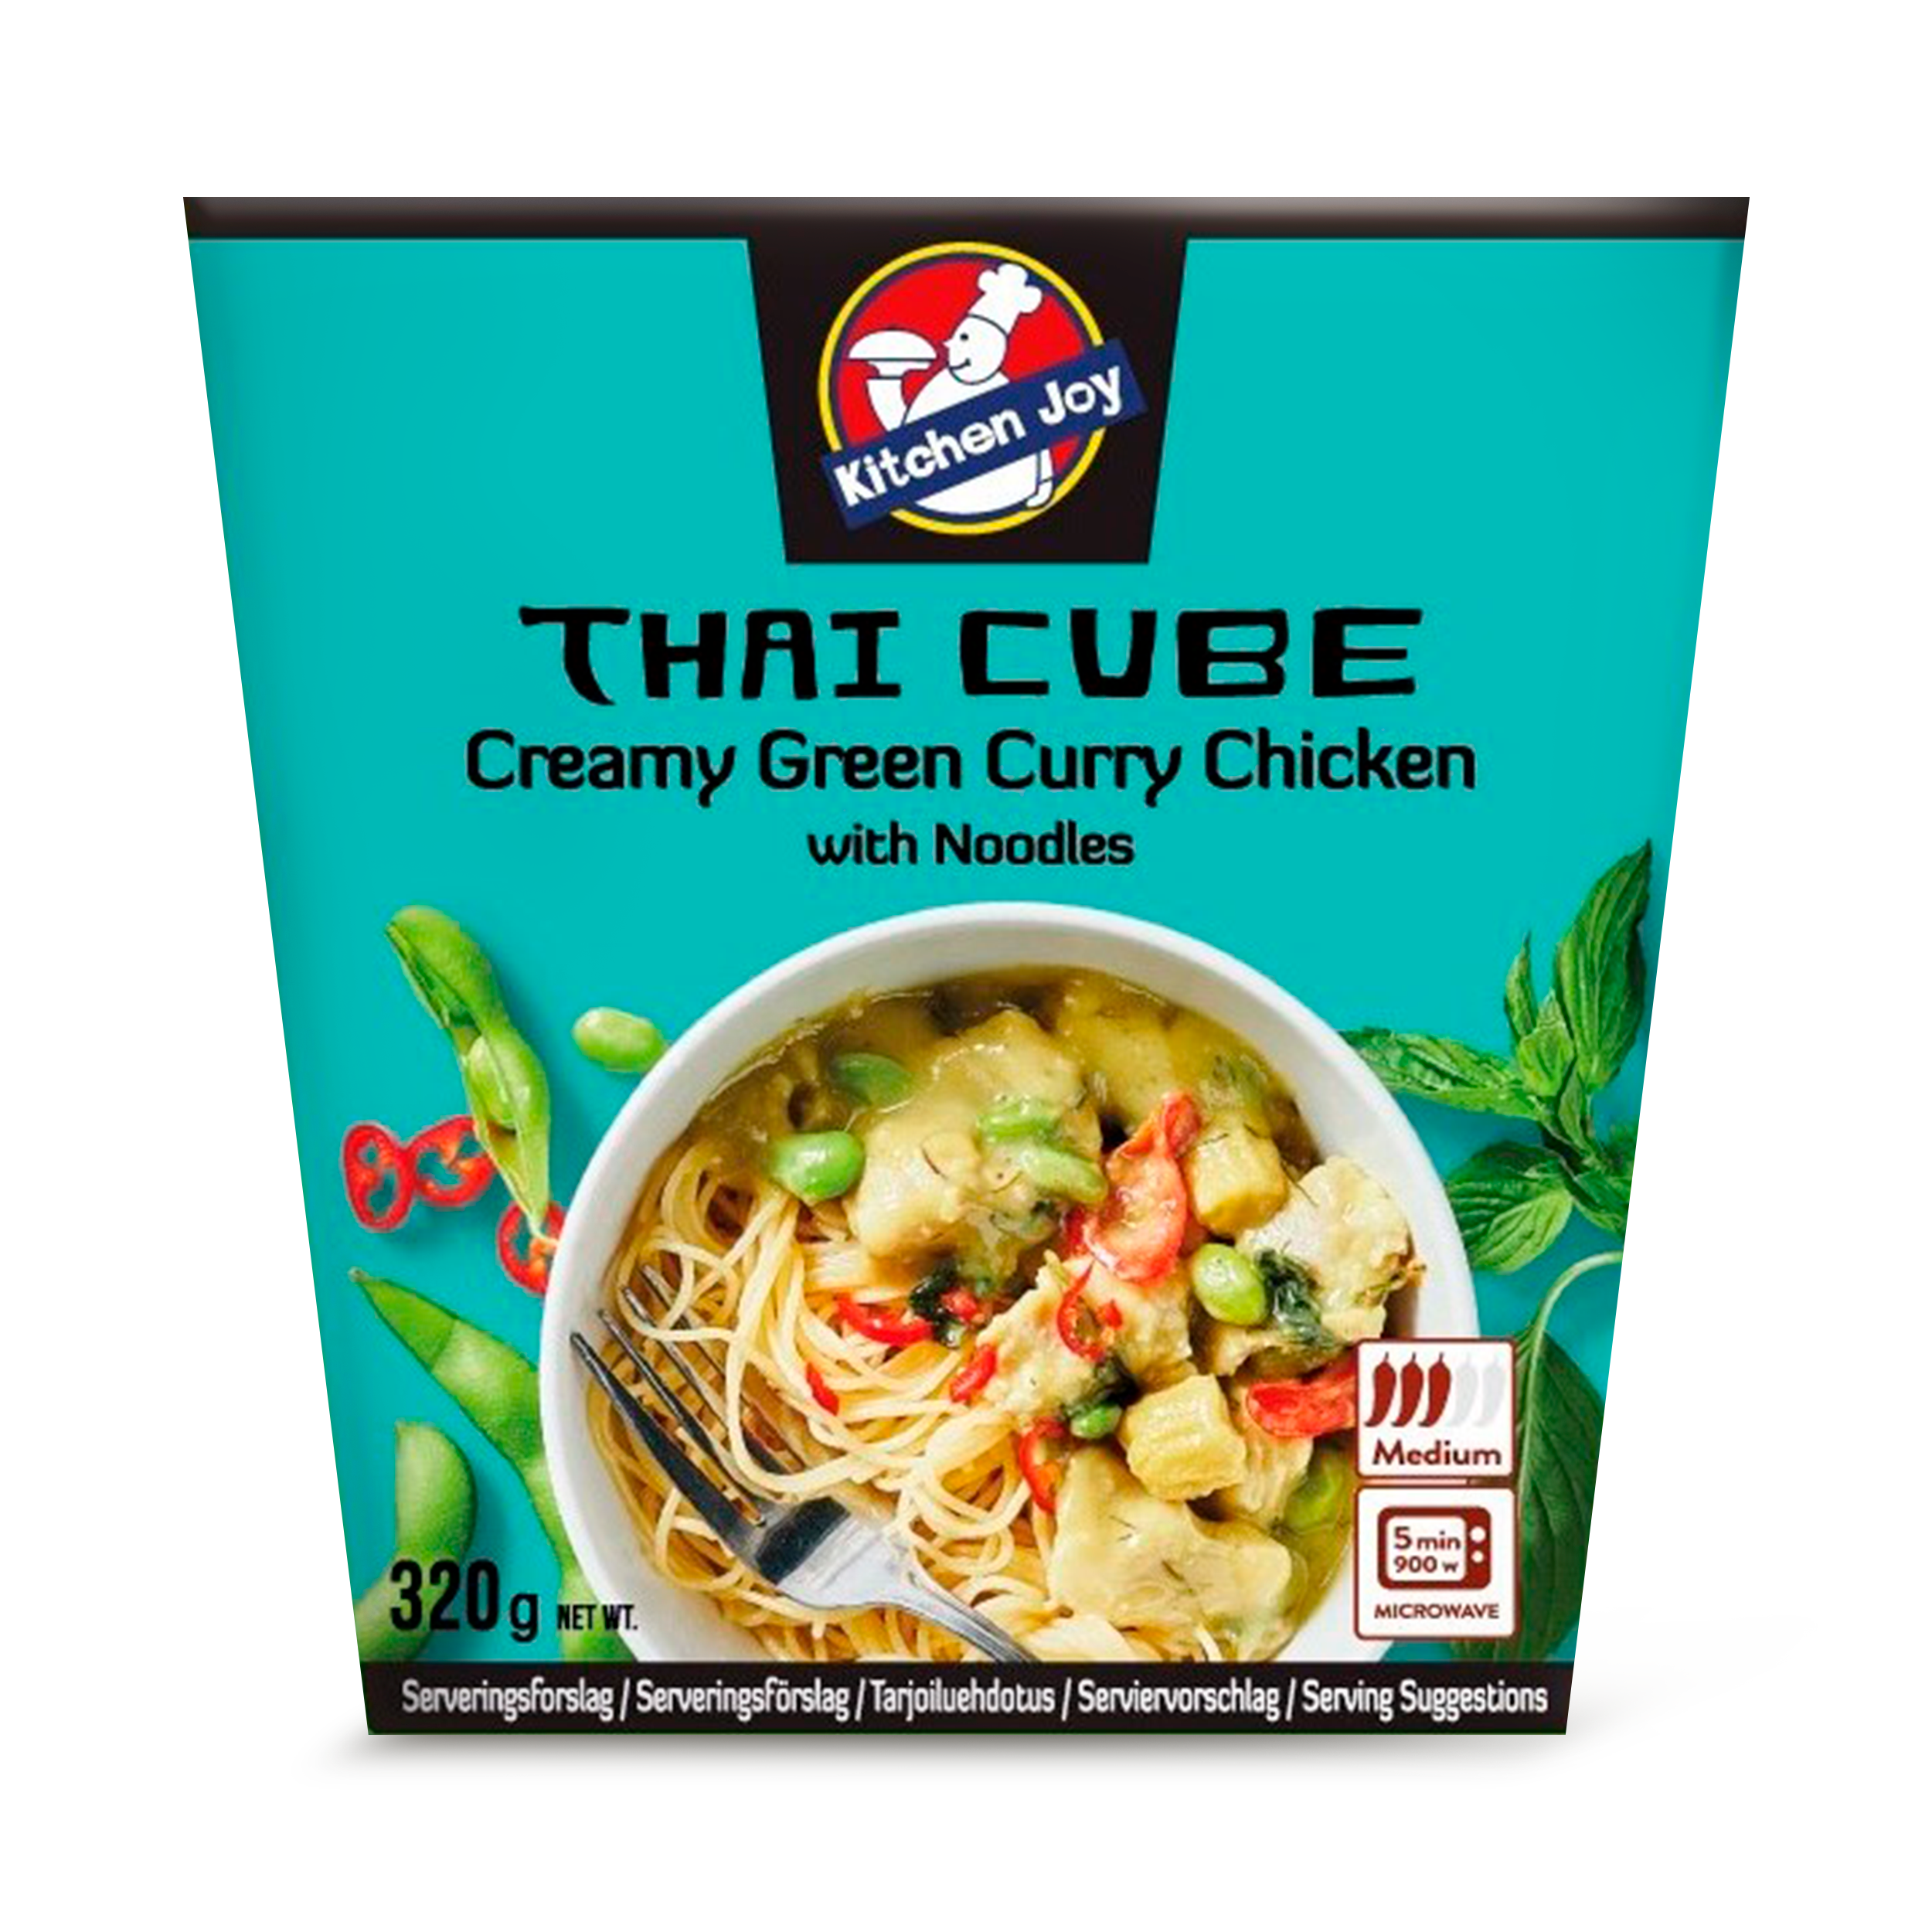 Kitchen Joy Thai Cube Panang Curry Chicken 350g bei REWE online bestellen!